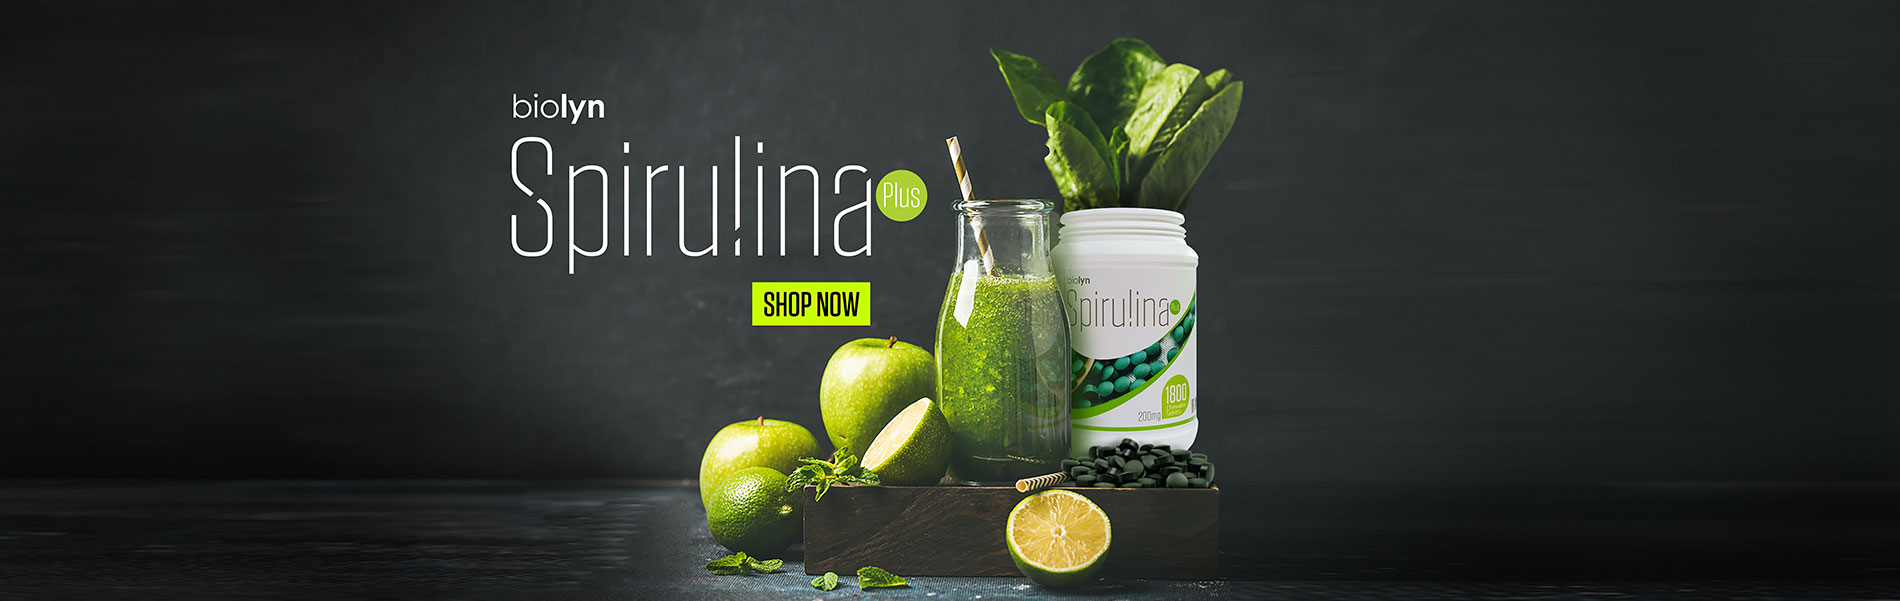 spirulina-new-banner